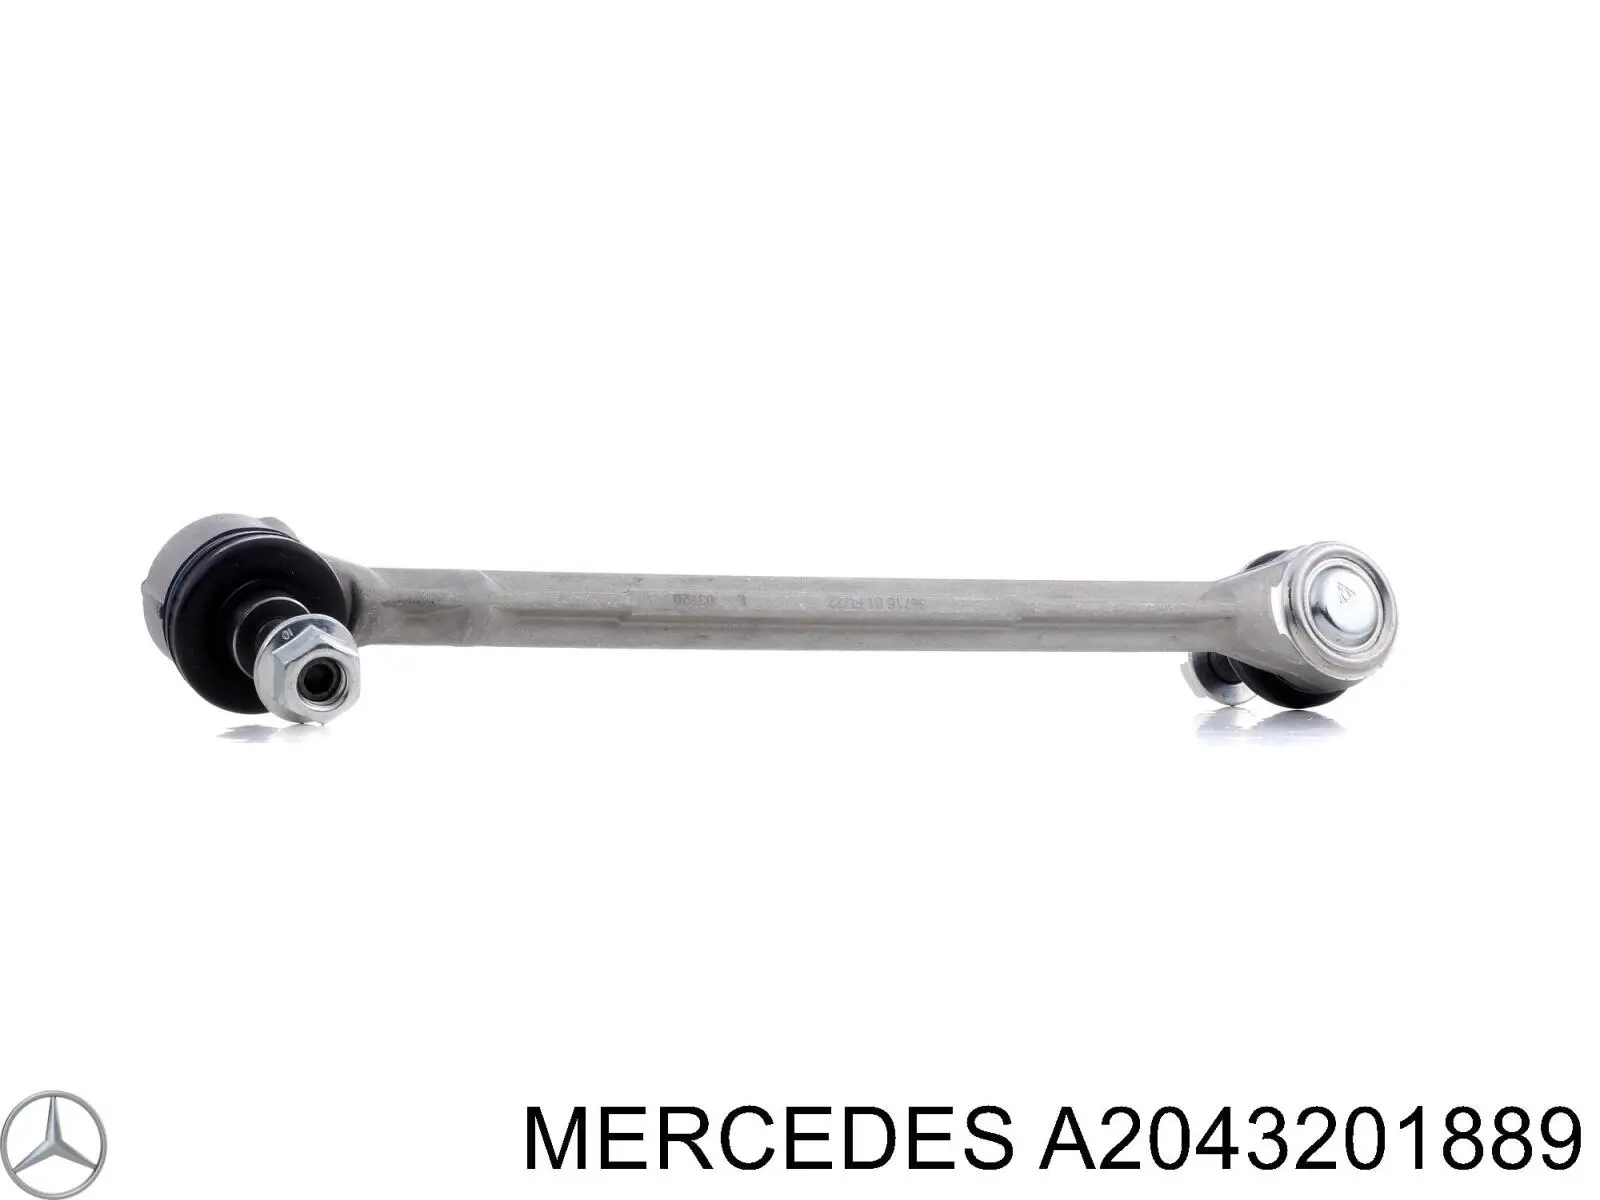 A2043201889 Mercedes barra estabilizadora delantera derecha